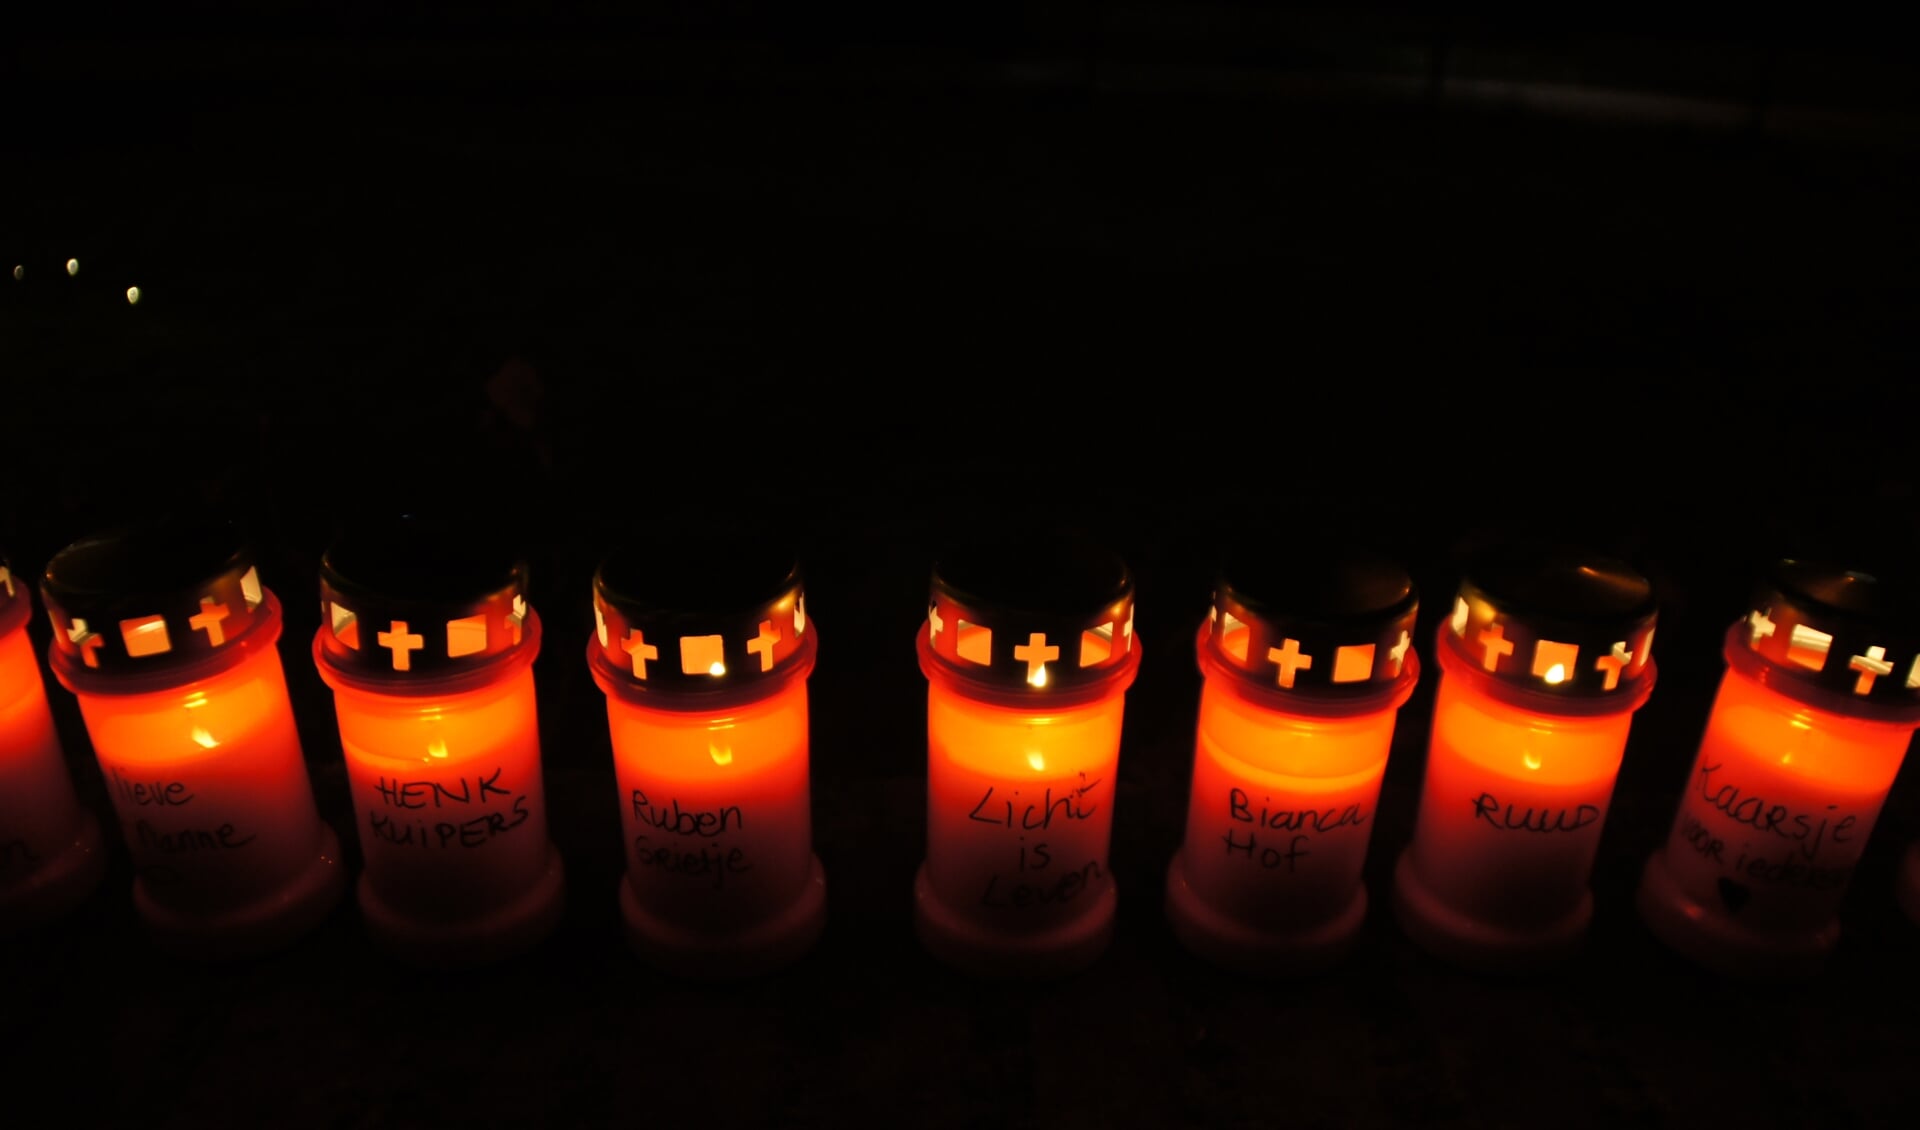 Op de kaarsen staan verschillende teksten, waaronder één met 'Licht is leven'.